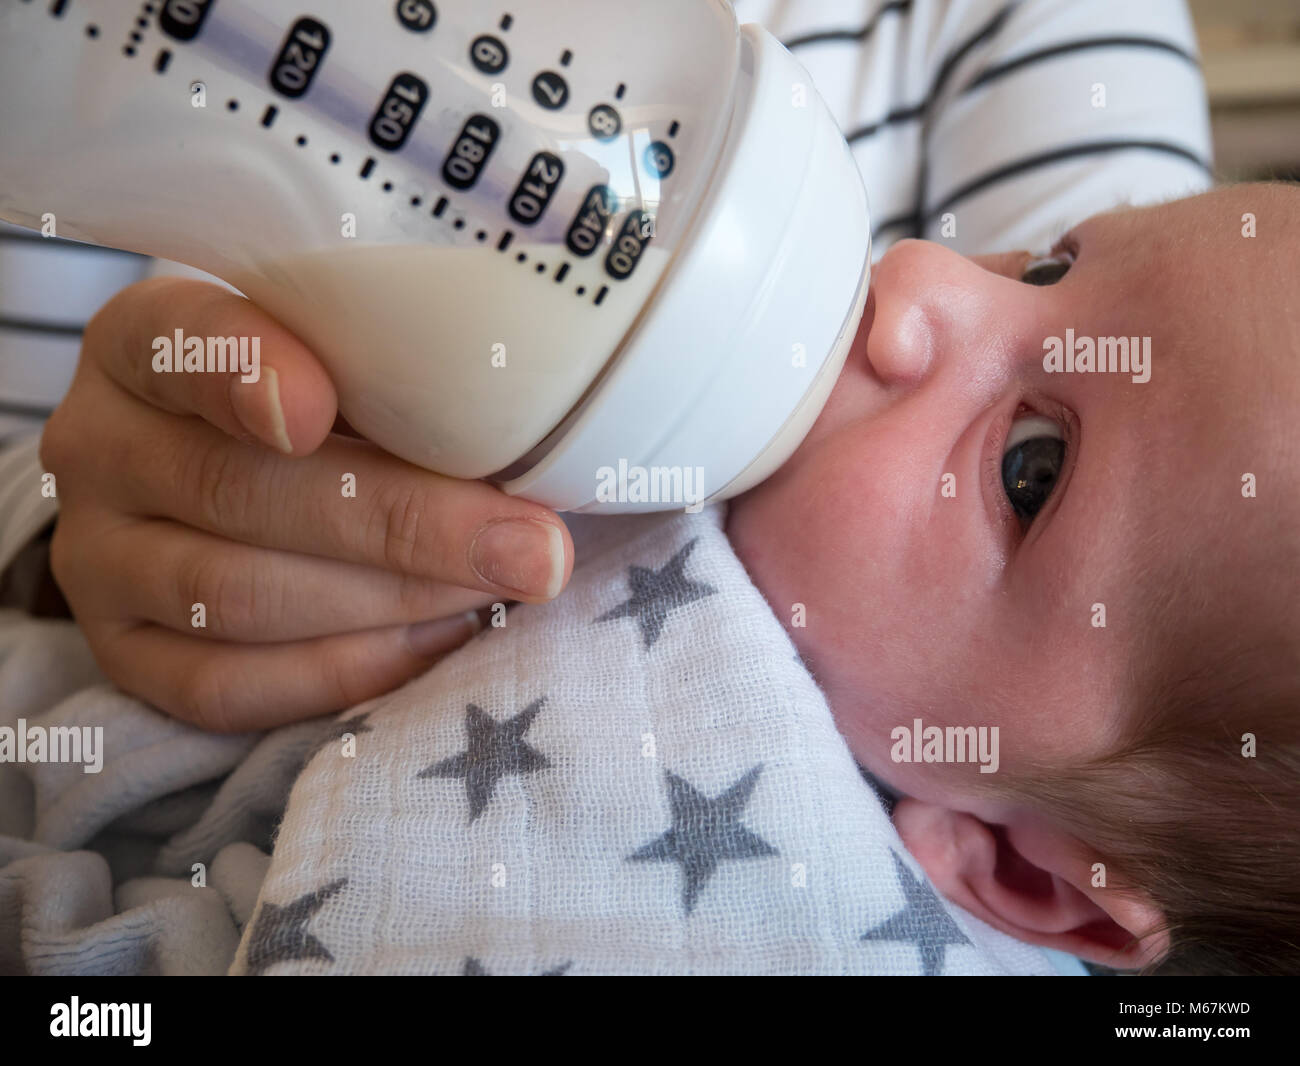 Cute baby boy eating le lait de la bouteille close up Banque D'Images